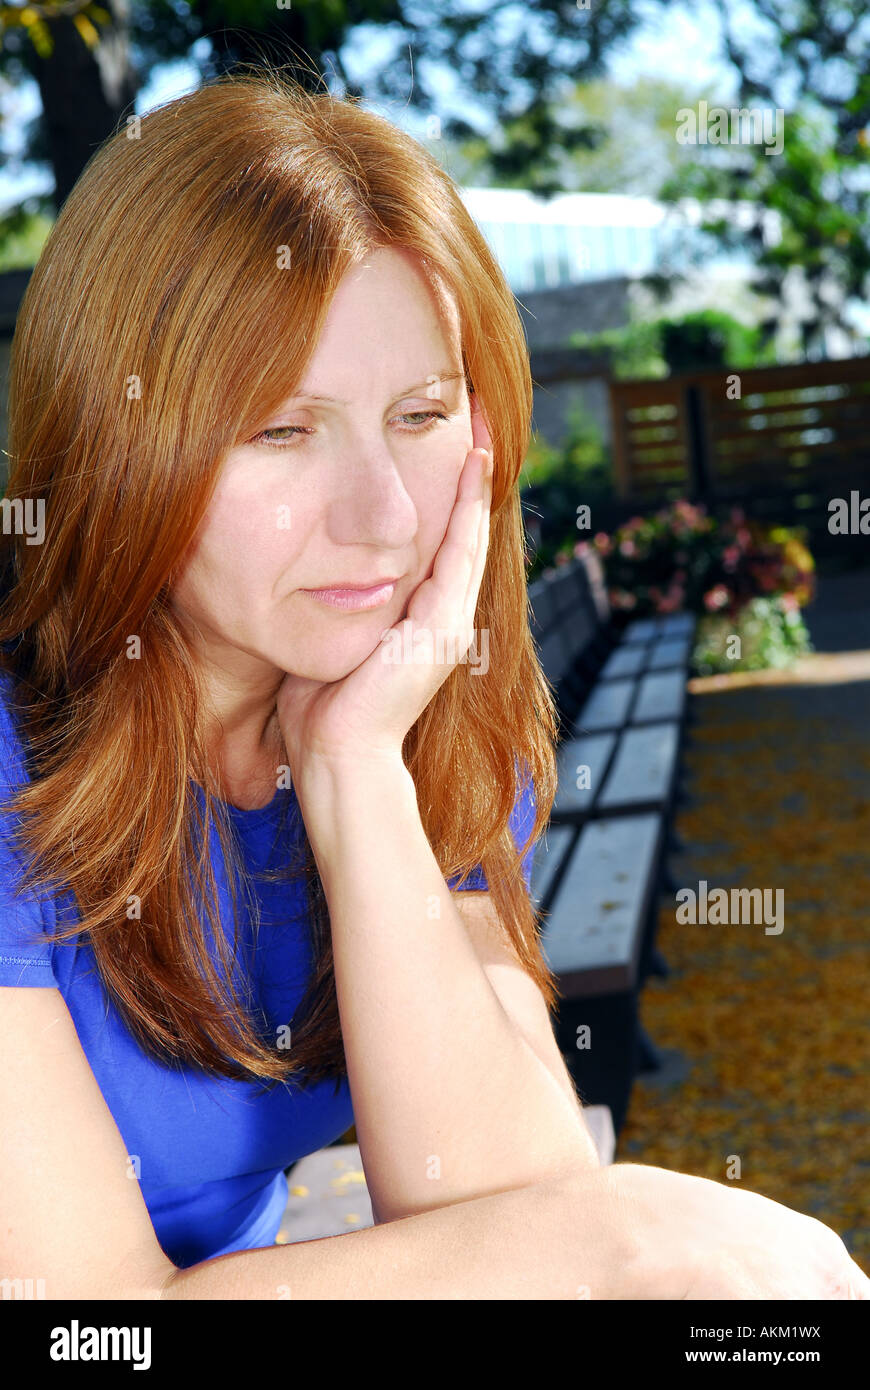 Reife Frau sucht, traurig und deprimiert allein auf einer Parkbank sitzen  Stockfotografie - Alamy